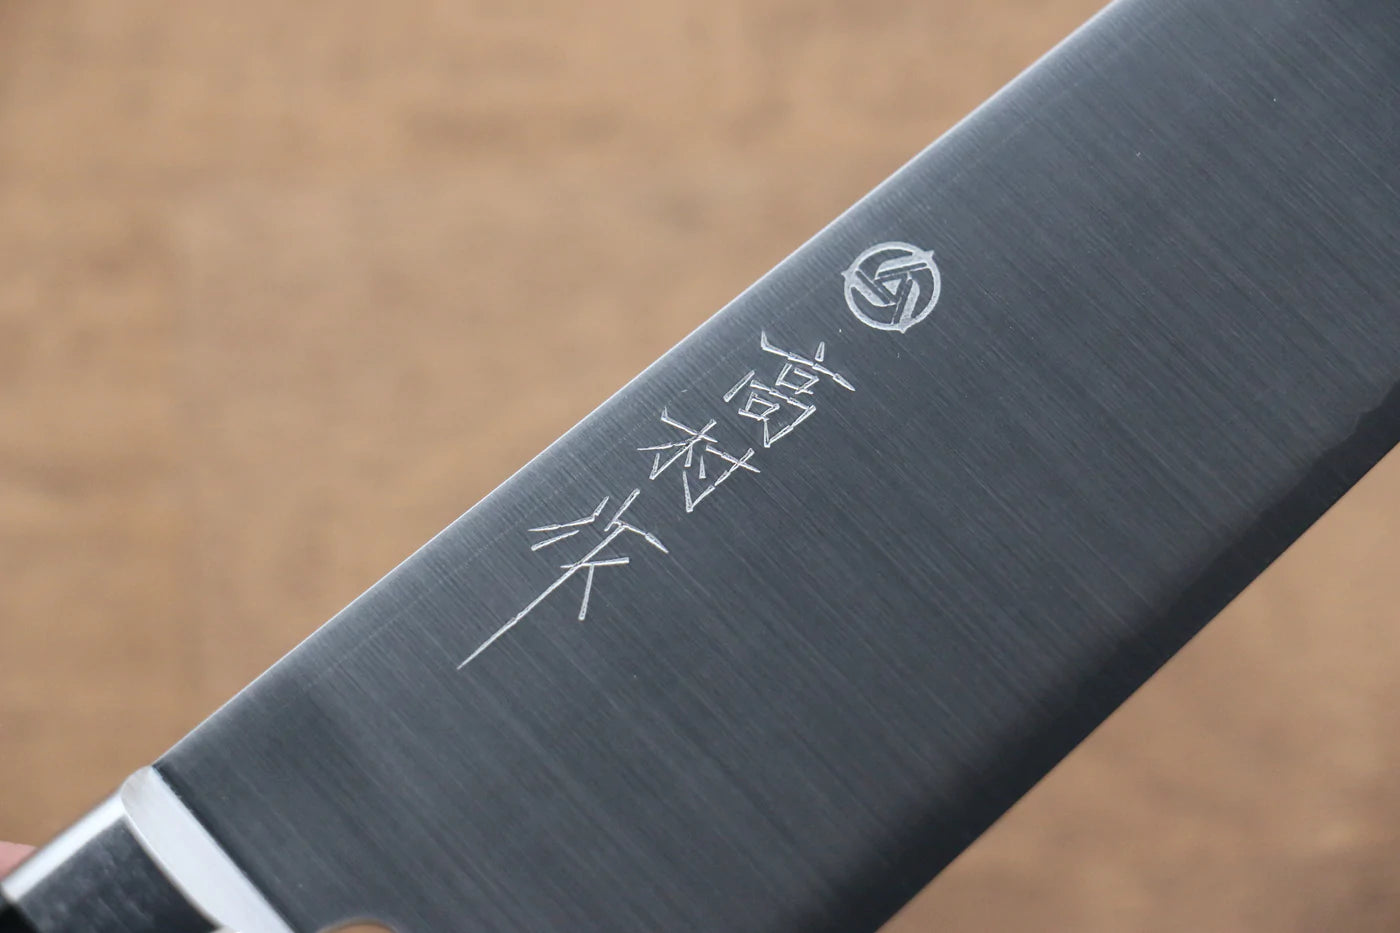 Takamura Knives Marke VG10 Santoku-Mehrzweckmesser Japanisches Messer 170 mm Griff aus schwarzem Pakkaholz